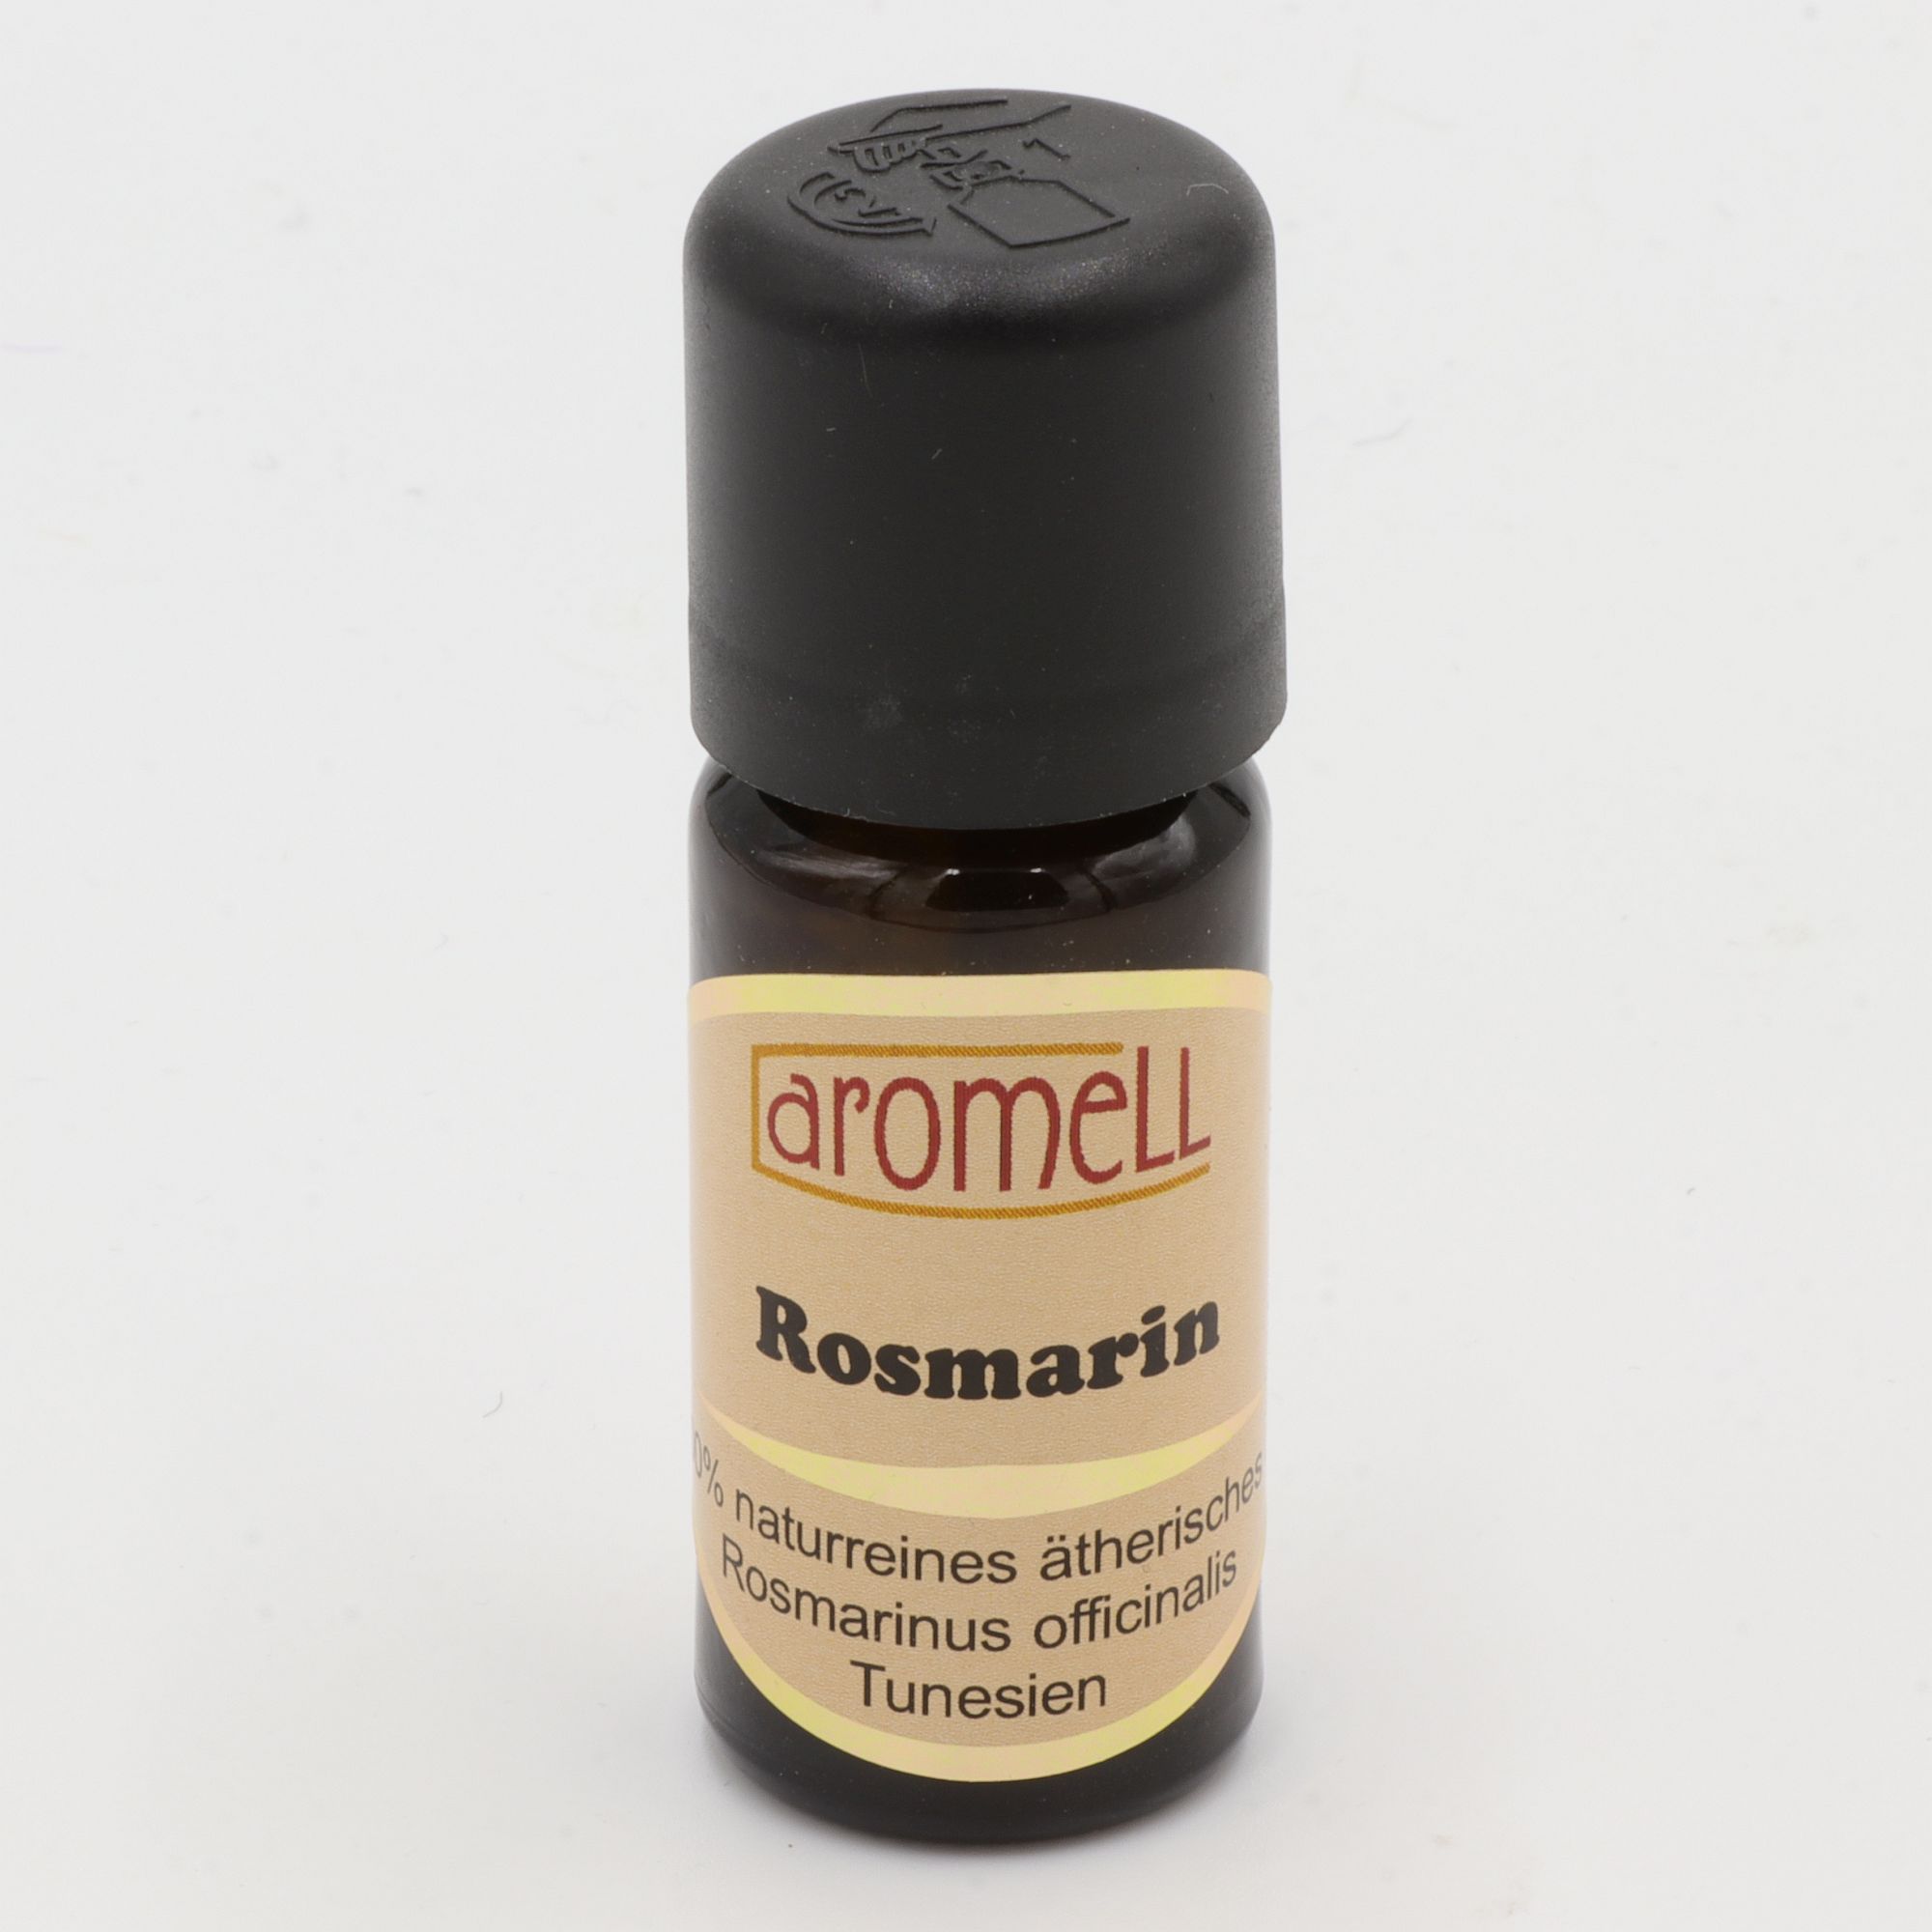 Ätherisches Öl - Aromell - Rosmarin - 100% naturrein - Rosmarinus Officinalis aus Tunesien - aromatischer Raumduft für Dein Wohlbefinden - Glas mit Tropfendosierung